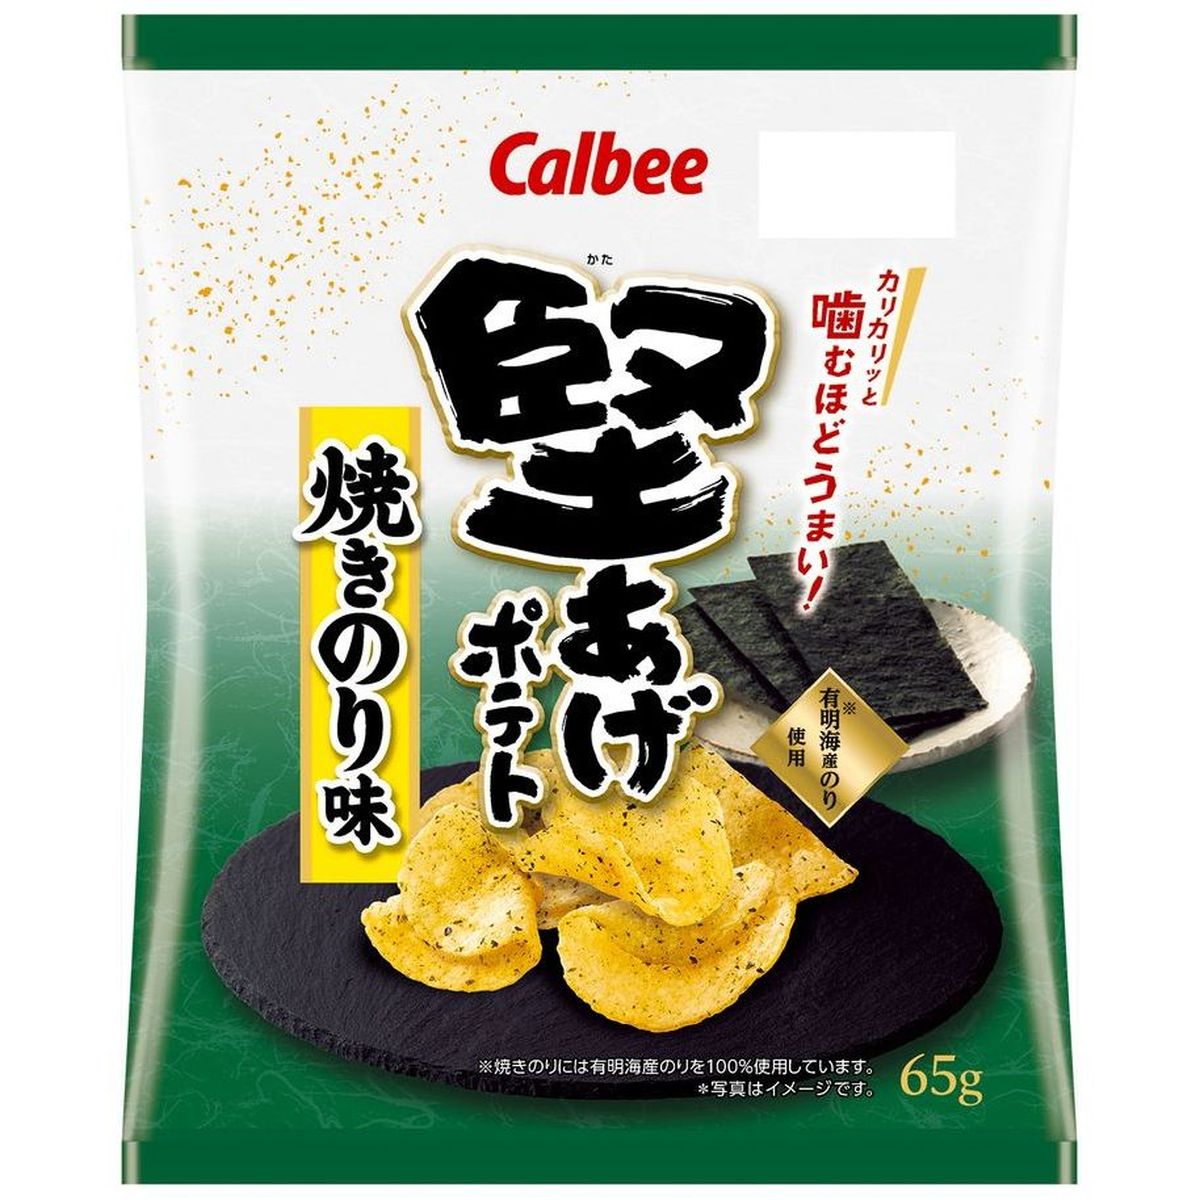 【12個入リ】カルビー 堅アゲポテト 焼キノリ味 65g